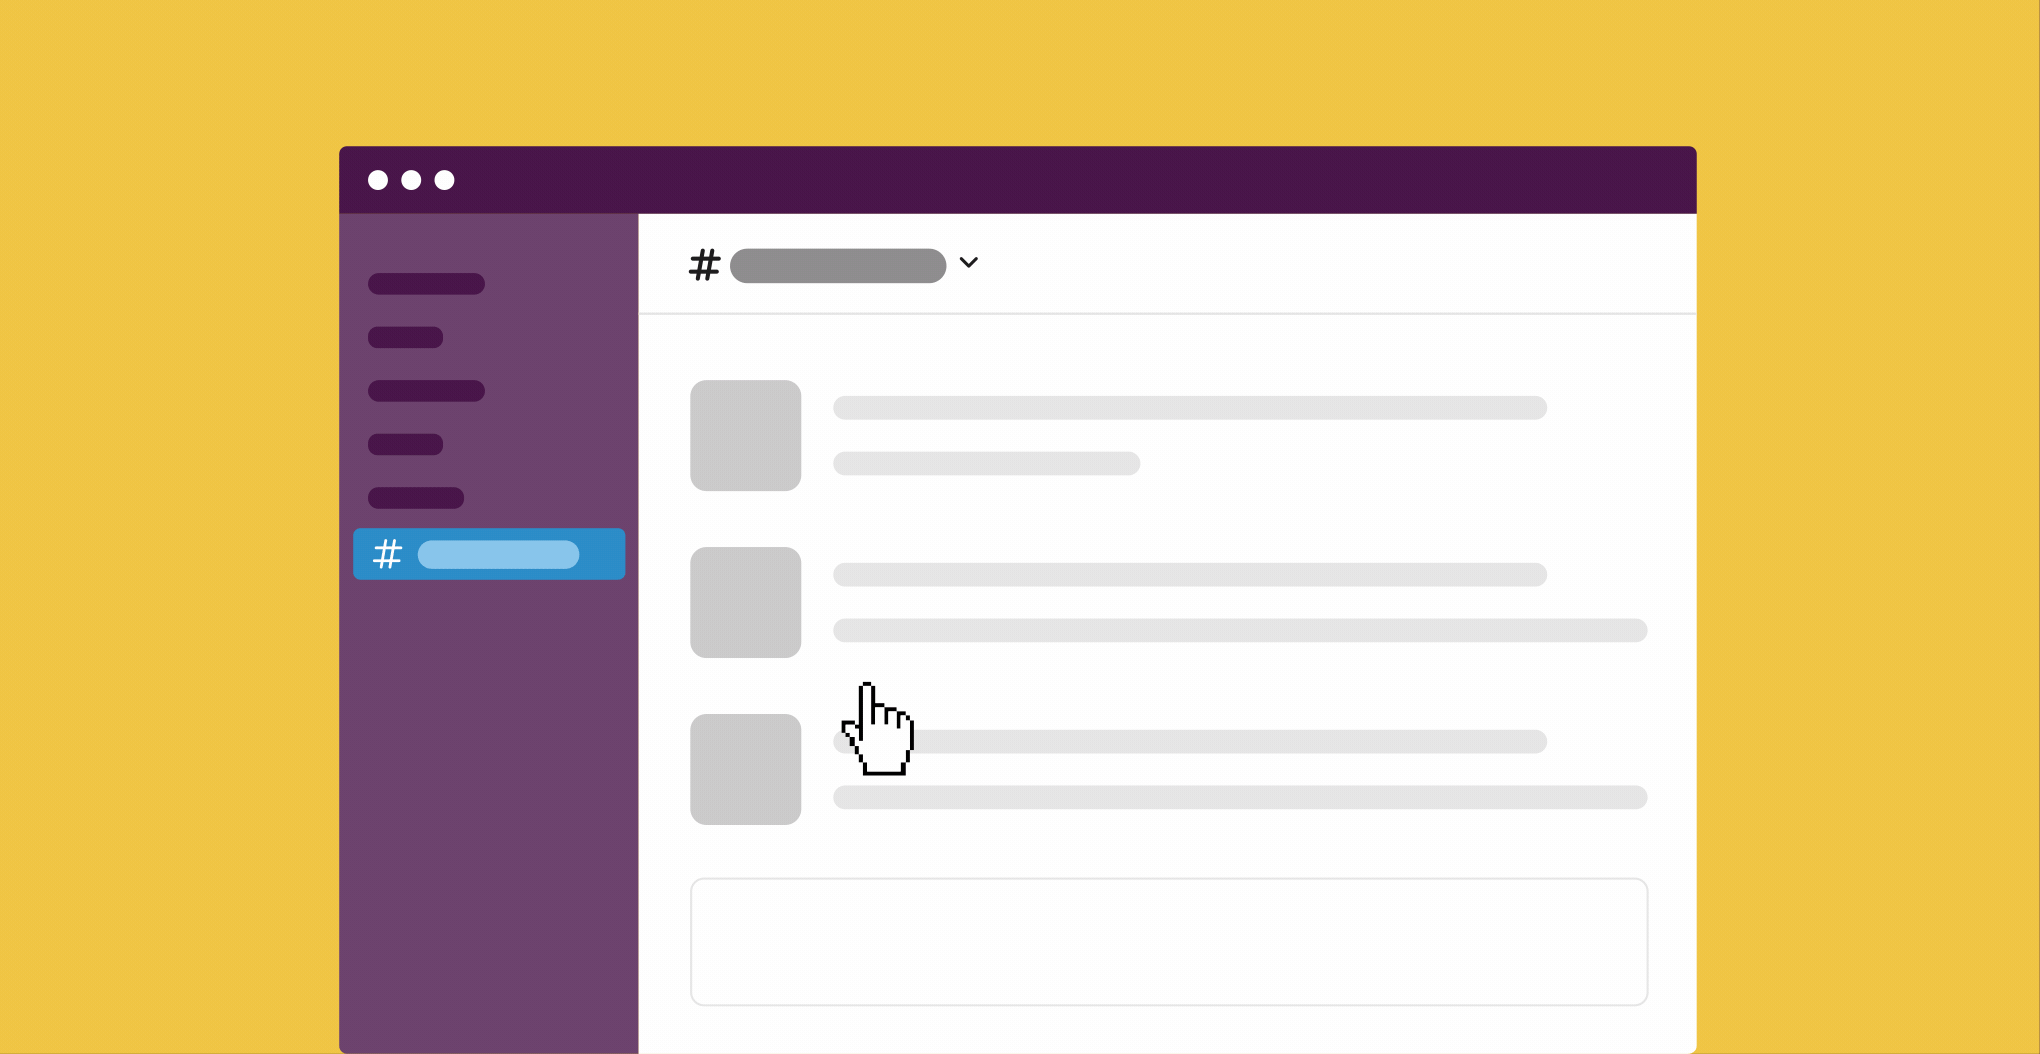 Aprire un canale in una nuova finestra dalla barra laterale nell’app desktop di Slack